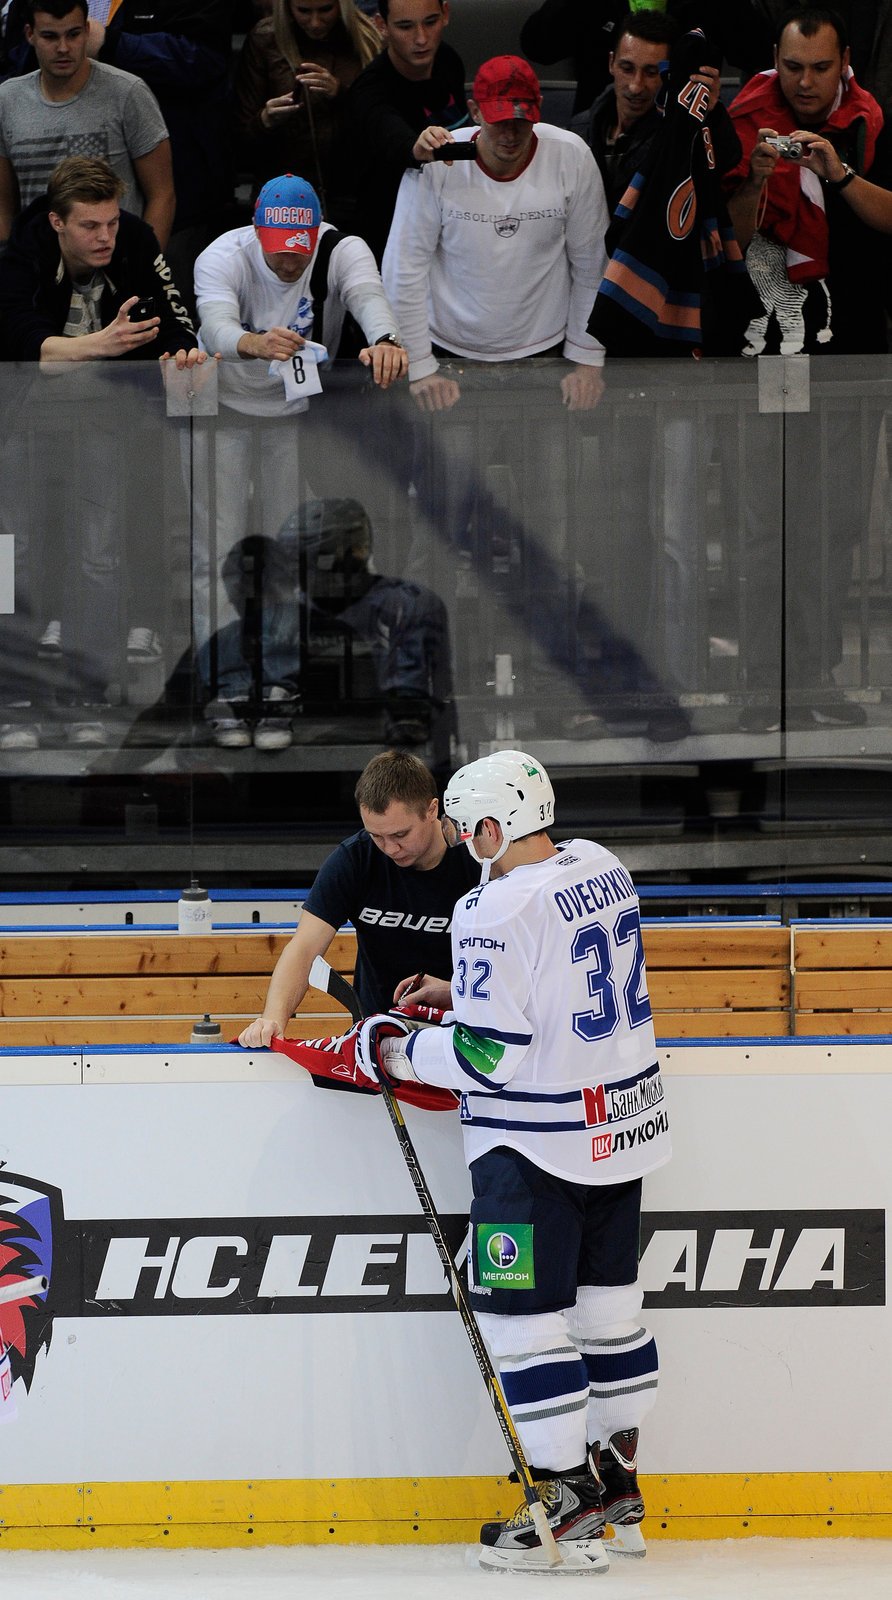 Ruský útočník Alexandr Ovečkin byl hvězdou zápasu KHL. Jediným gólem rozhodl o výhře Dynama Moskva nad pražským Lvem. Po zápase podepsal jednomu z fanoušků dres Washingtonu